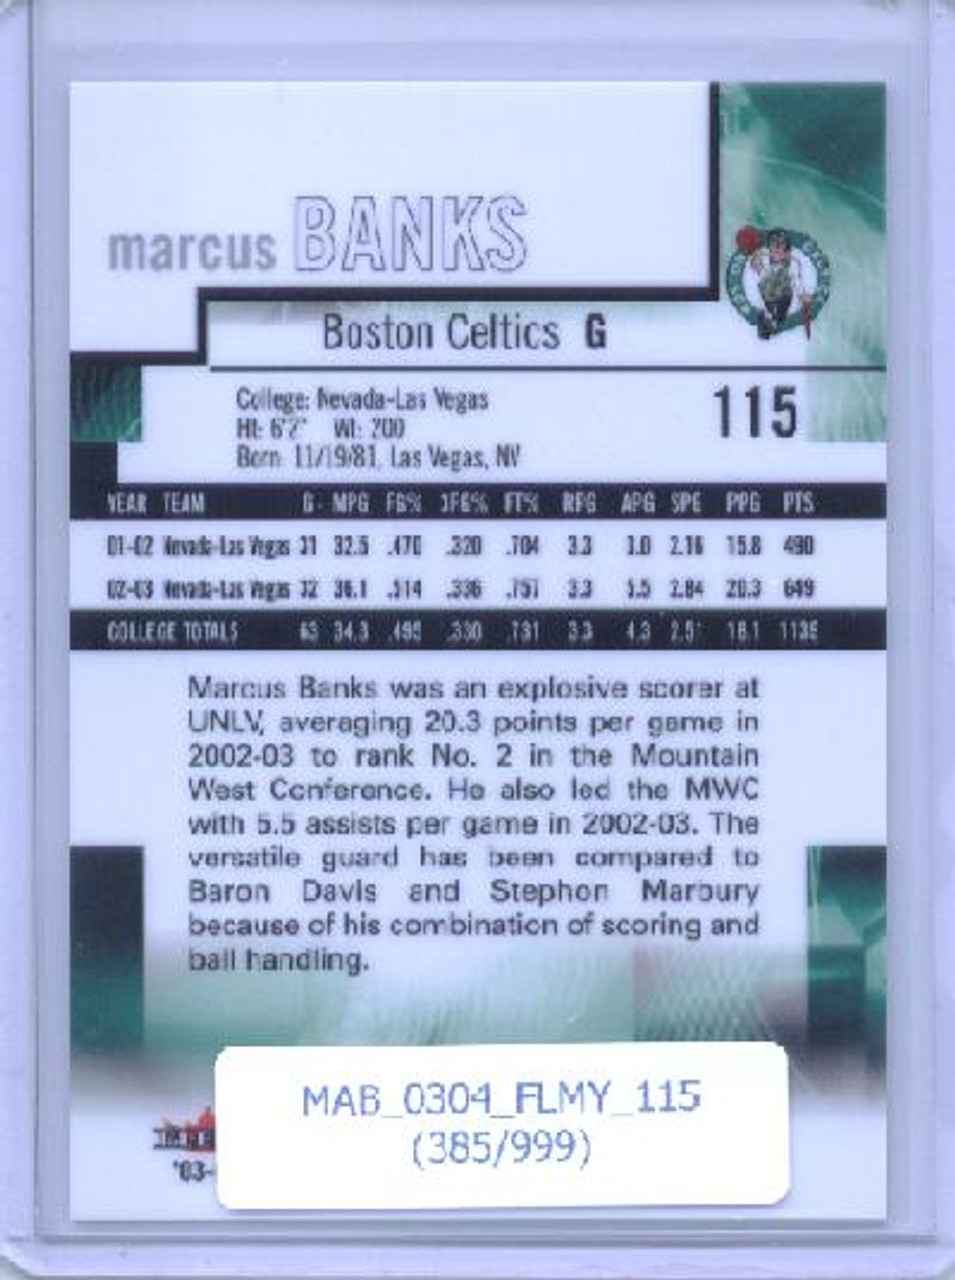 Marcus Banks 2003-04 Mystique #115 (#385/999)